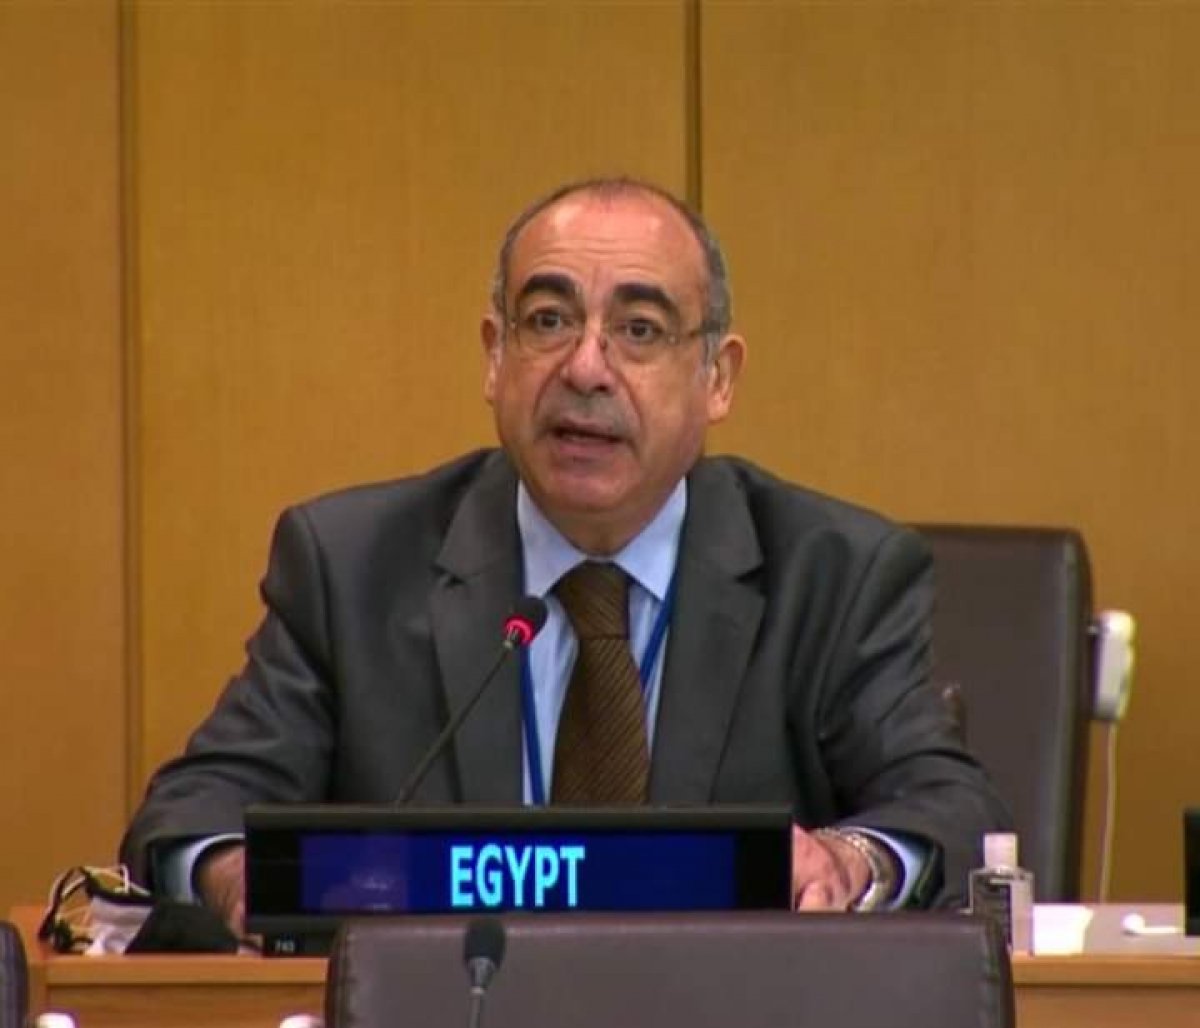 تجديد الثقة.. إعادة انتخاب مصر لعضوية لجنة الأمم المتحدة لبناء السلام  